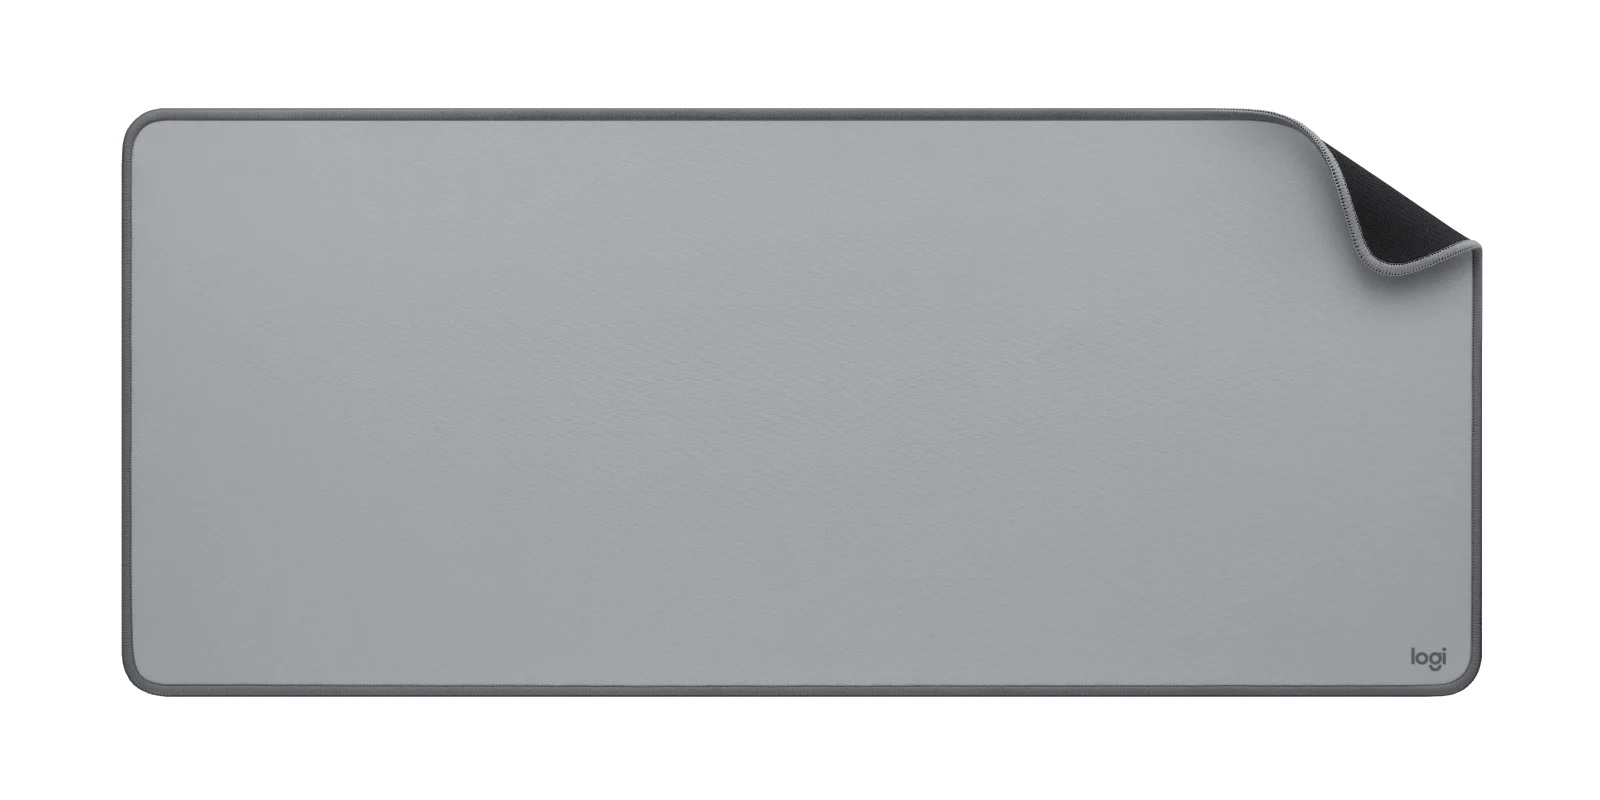 Mouse Pad Logitech Desk Mat Studio A color 300 x 700 mm Tamaño XL